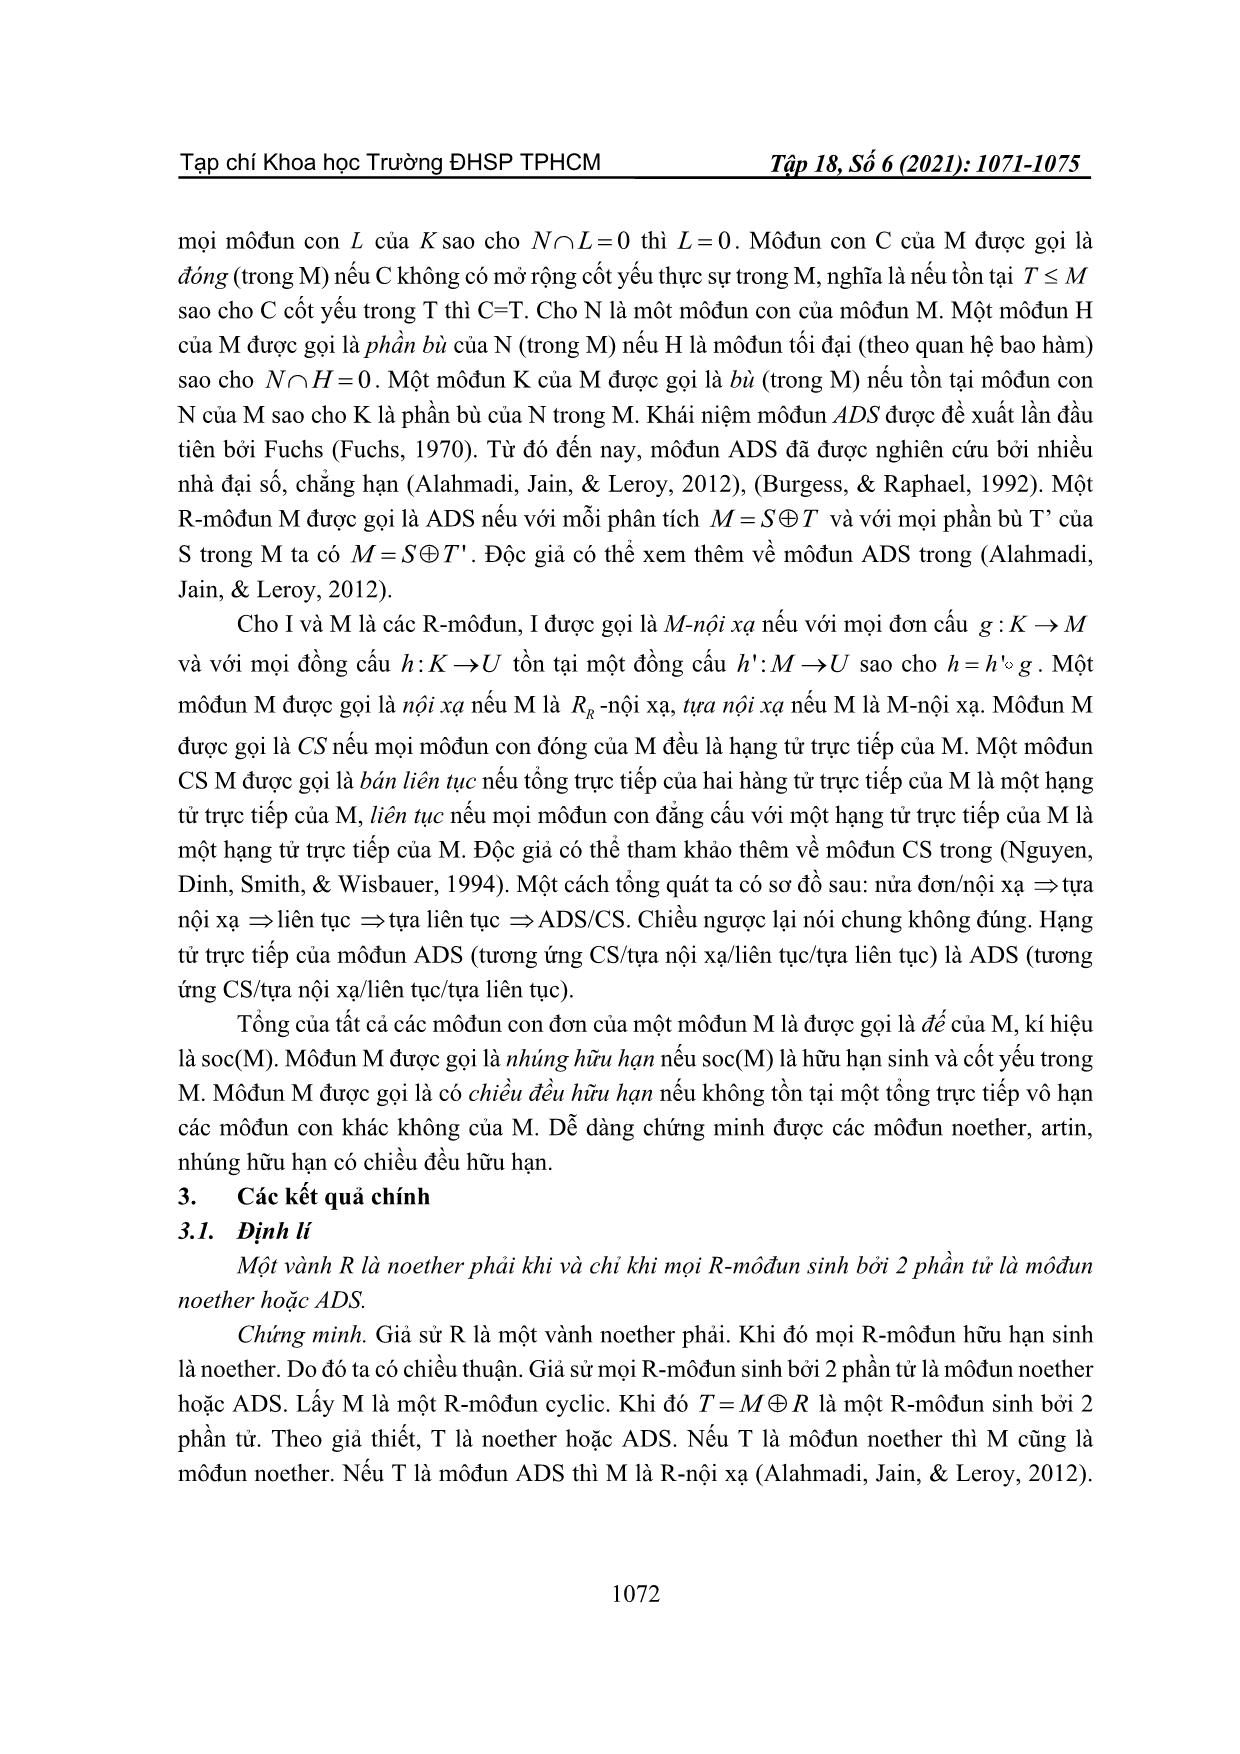 Đặc trưng của vành Noether và Artin trang 2